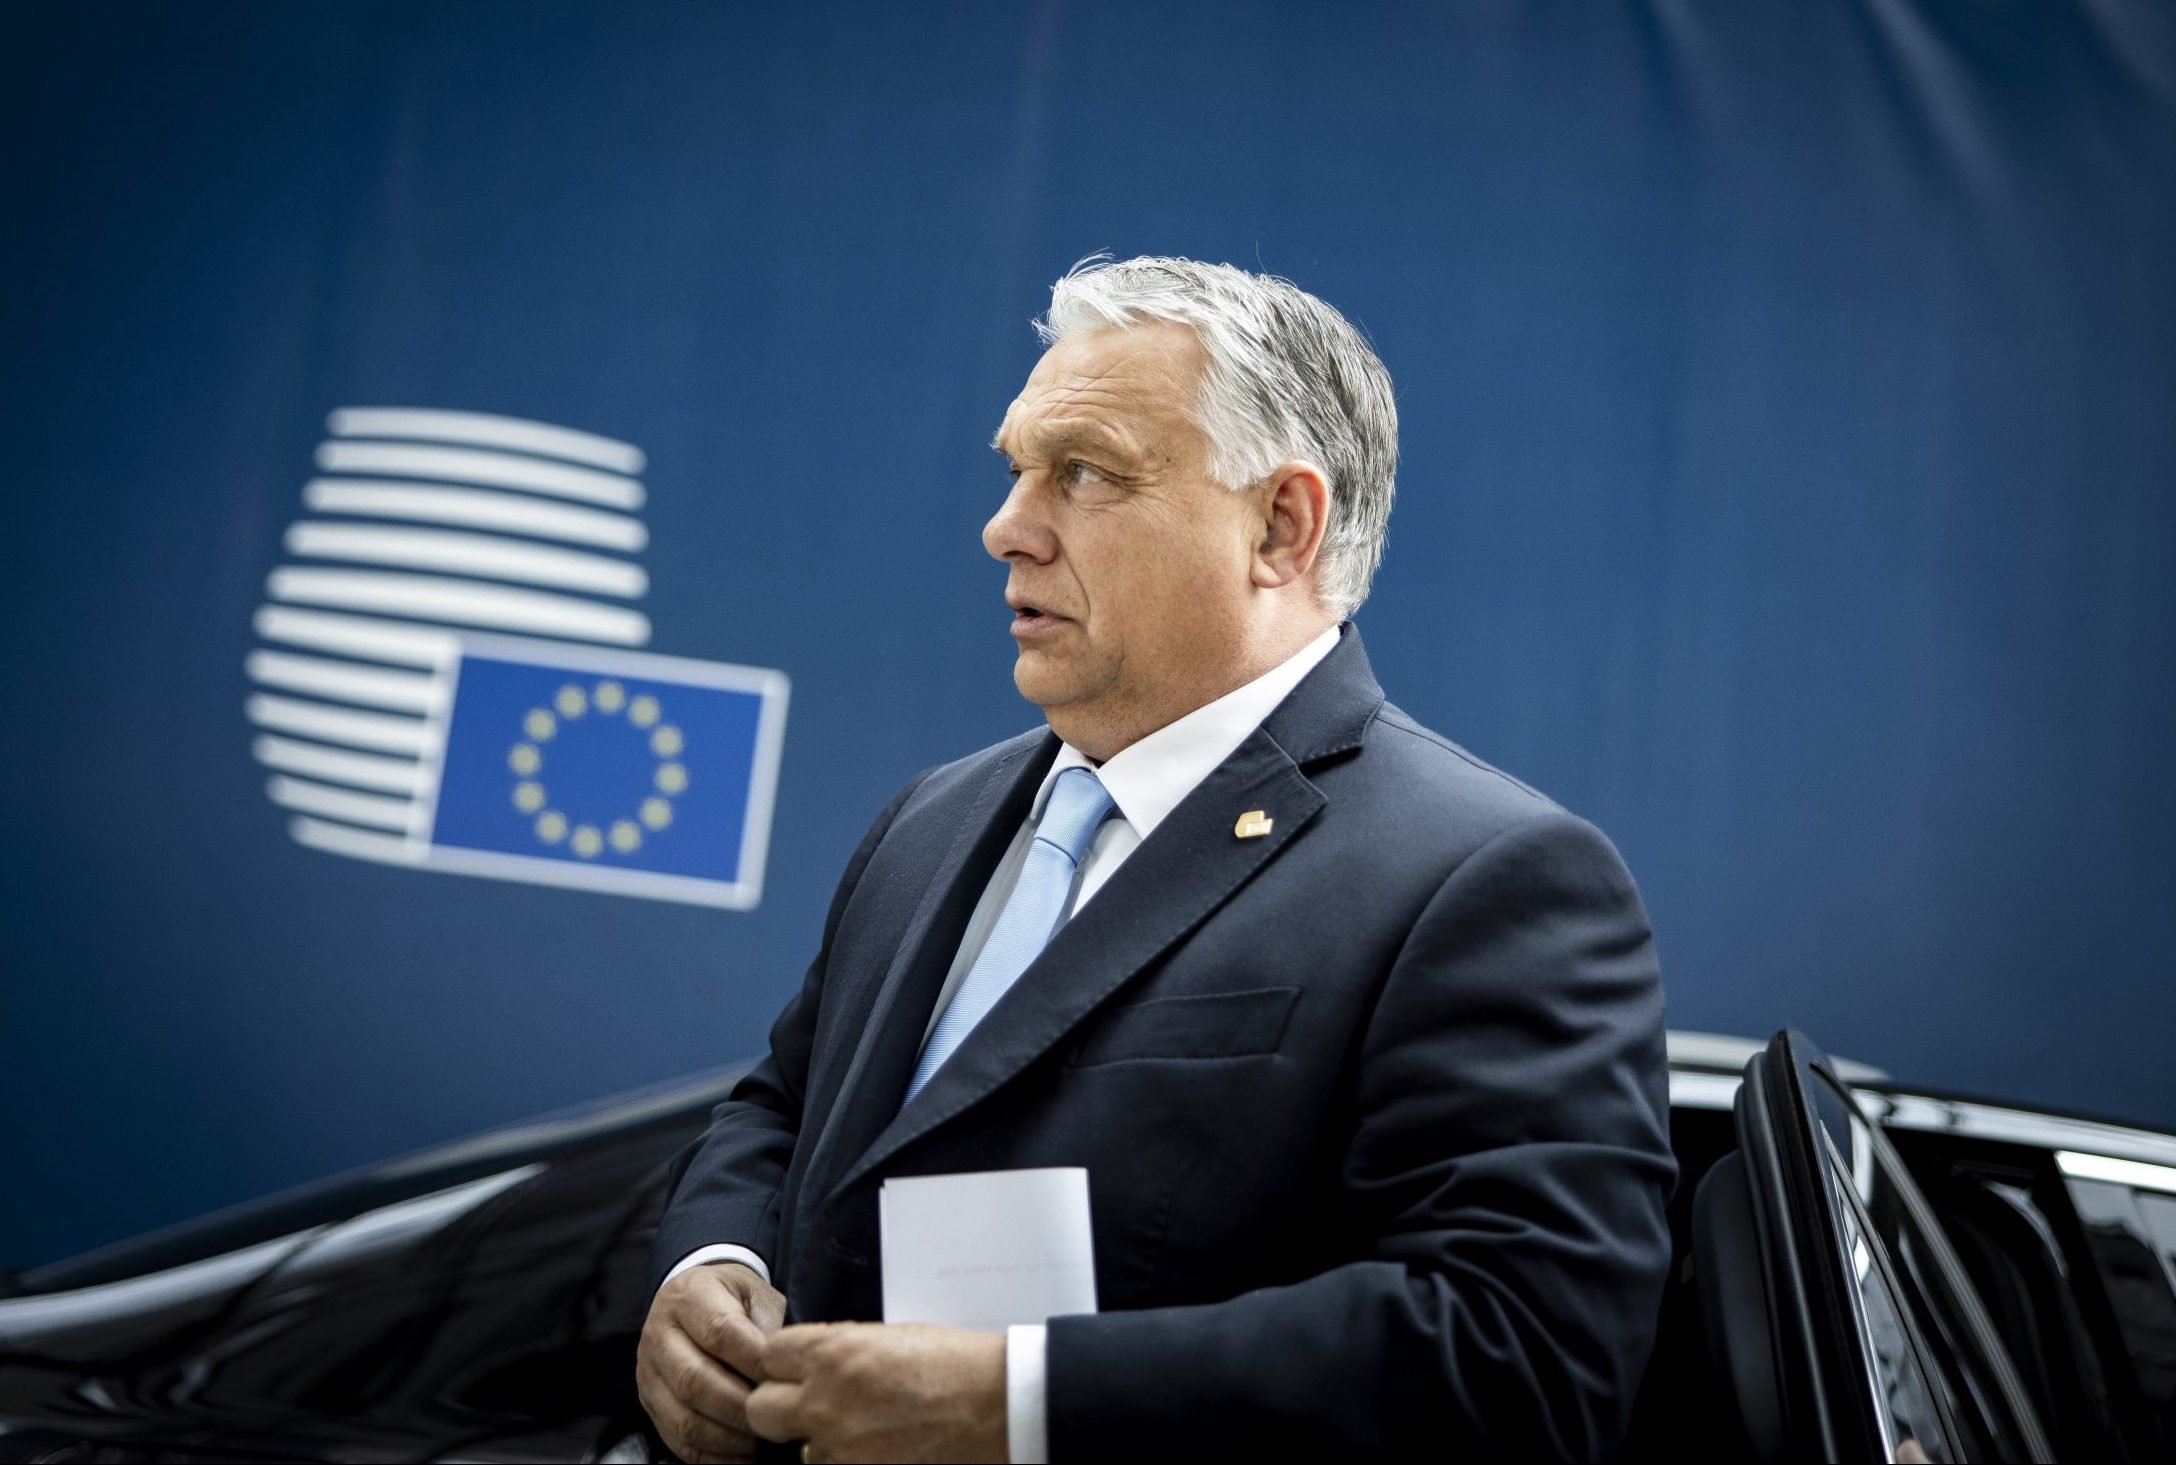 Viktor Orbán navržen do funkce místo von der Leyenové